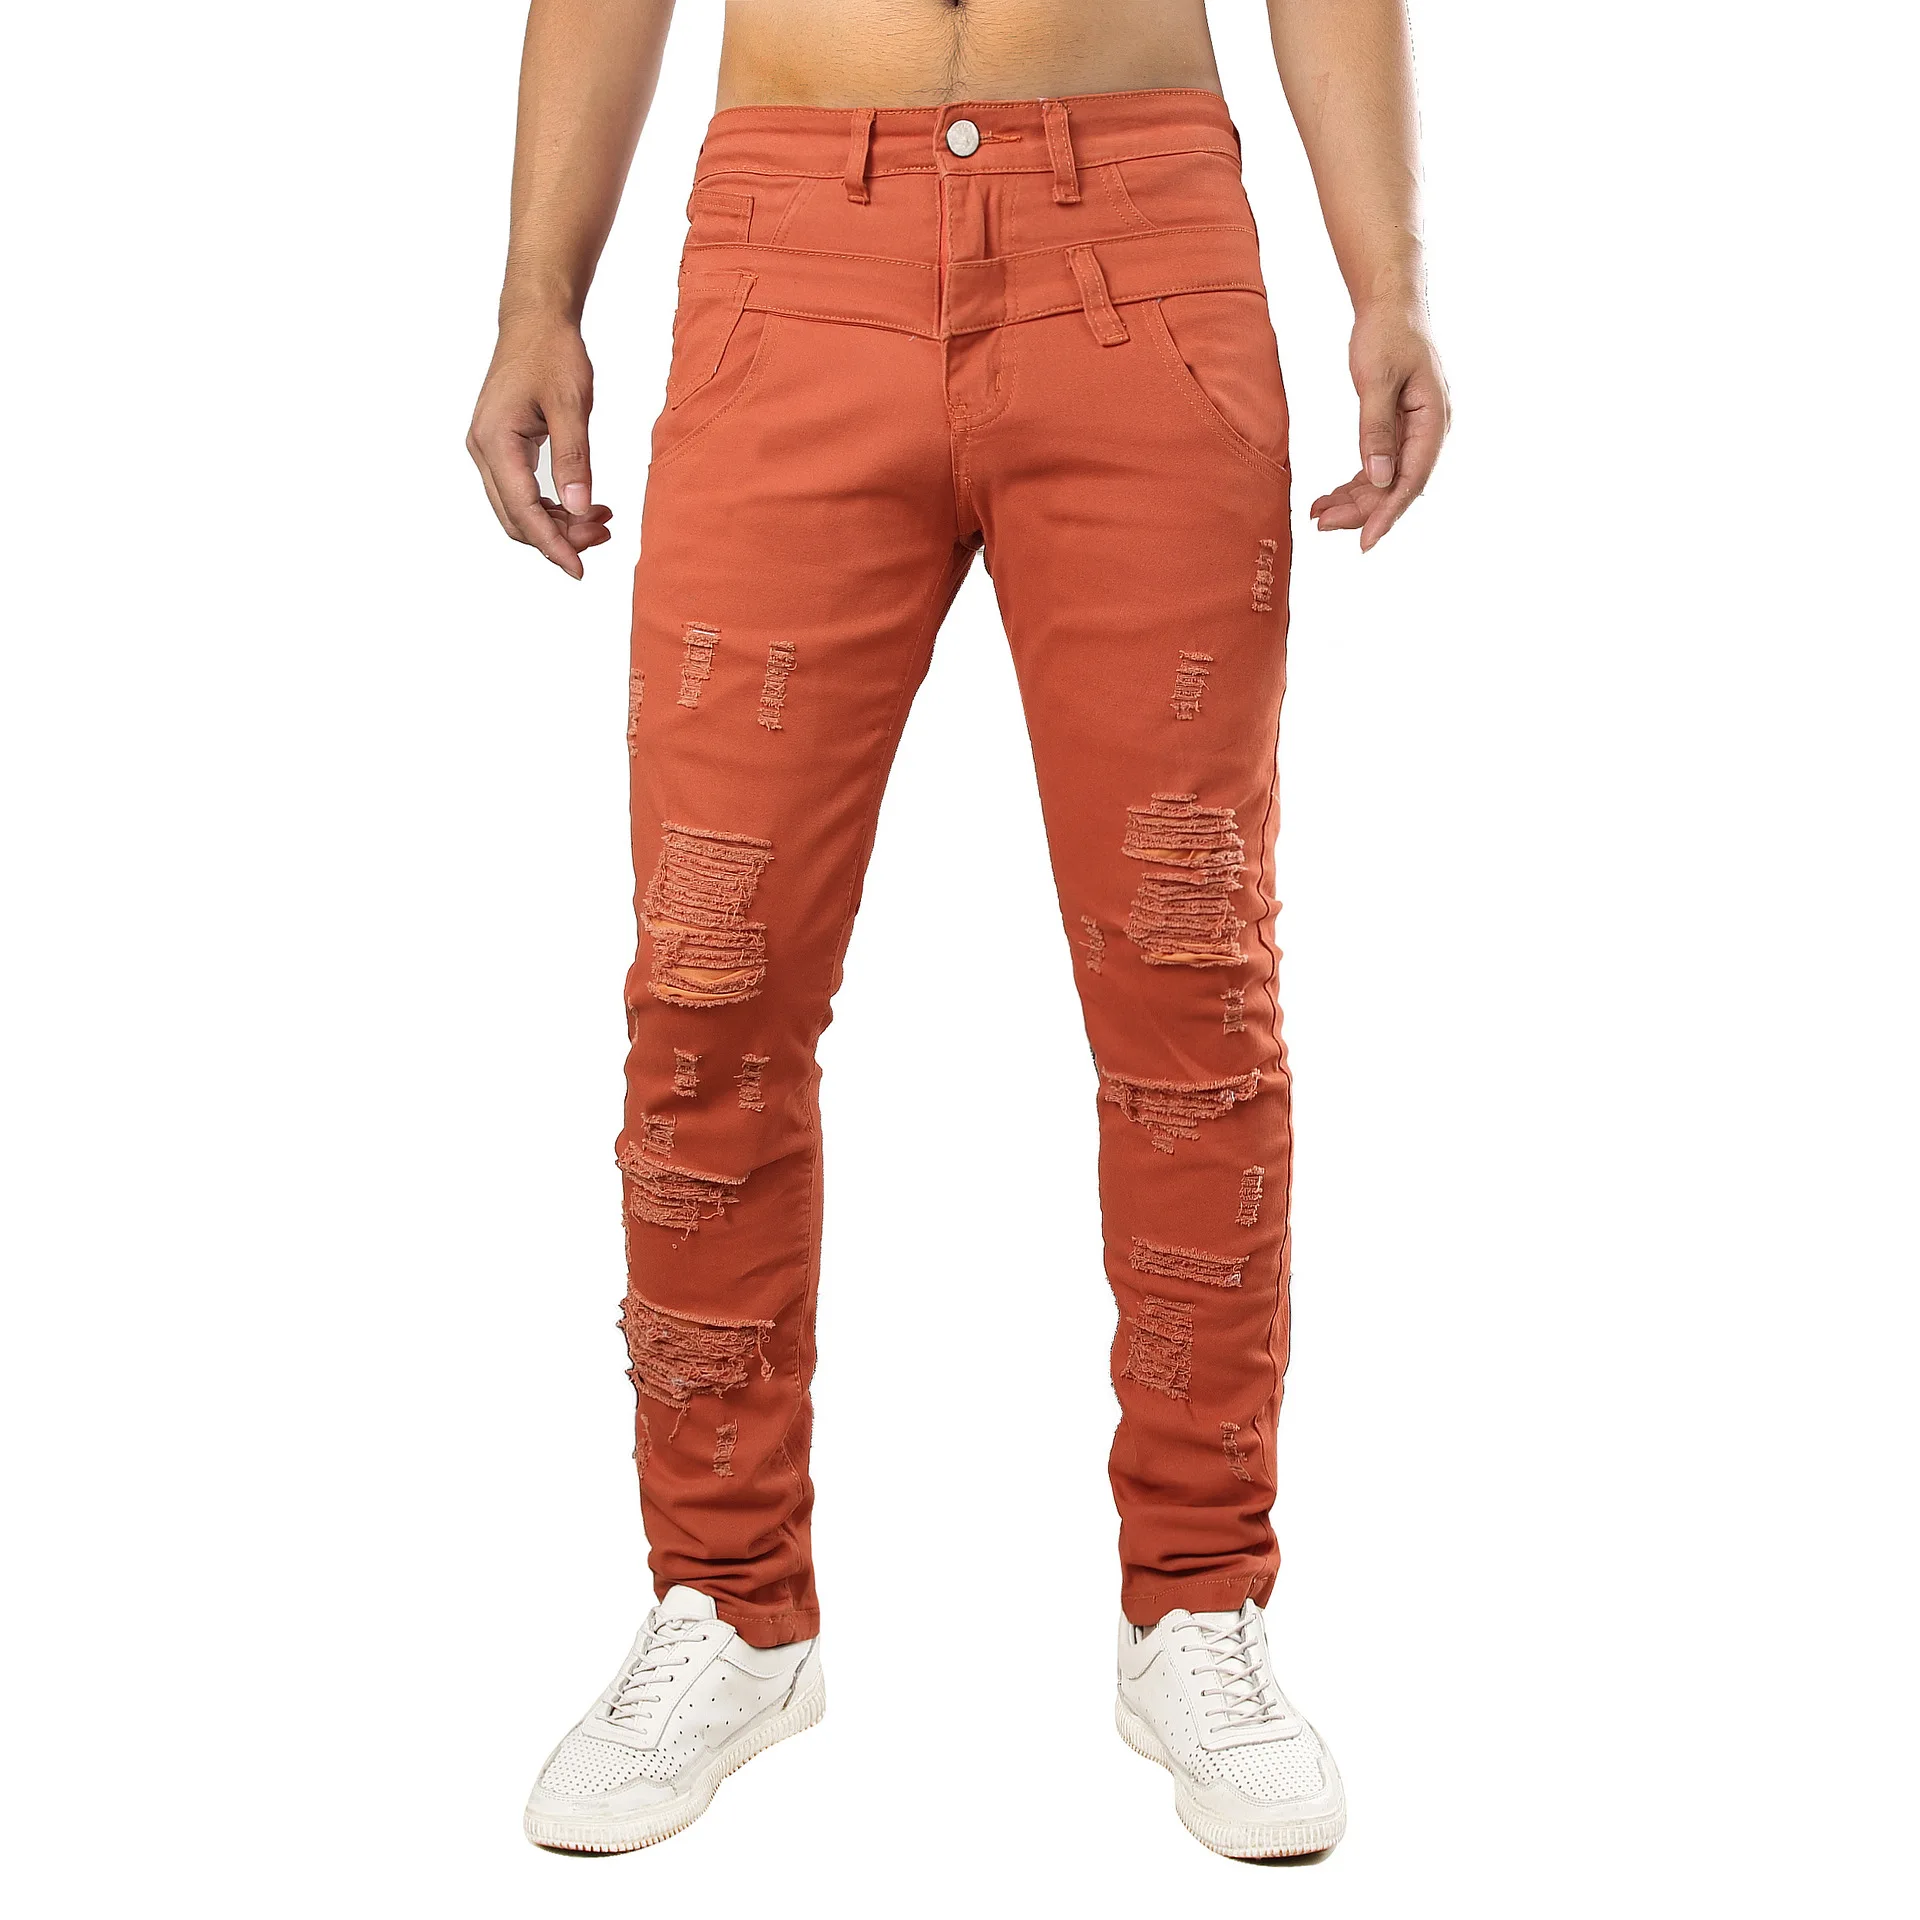 Брендовая одежда, мужские Узкие рваные джинсы/минималистичные джинсовые штаны, мужские джинсовые штаны, эластичные джинсы оранжевого цвета